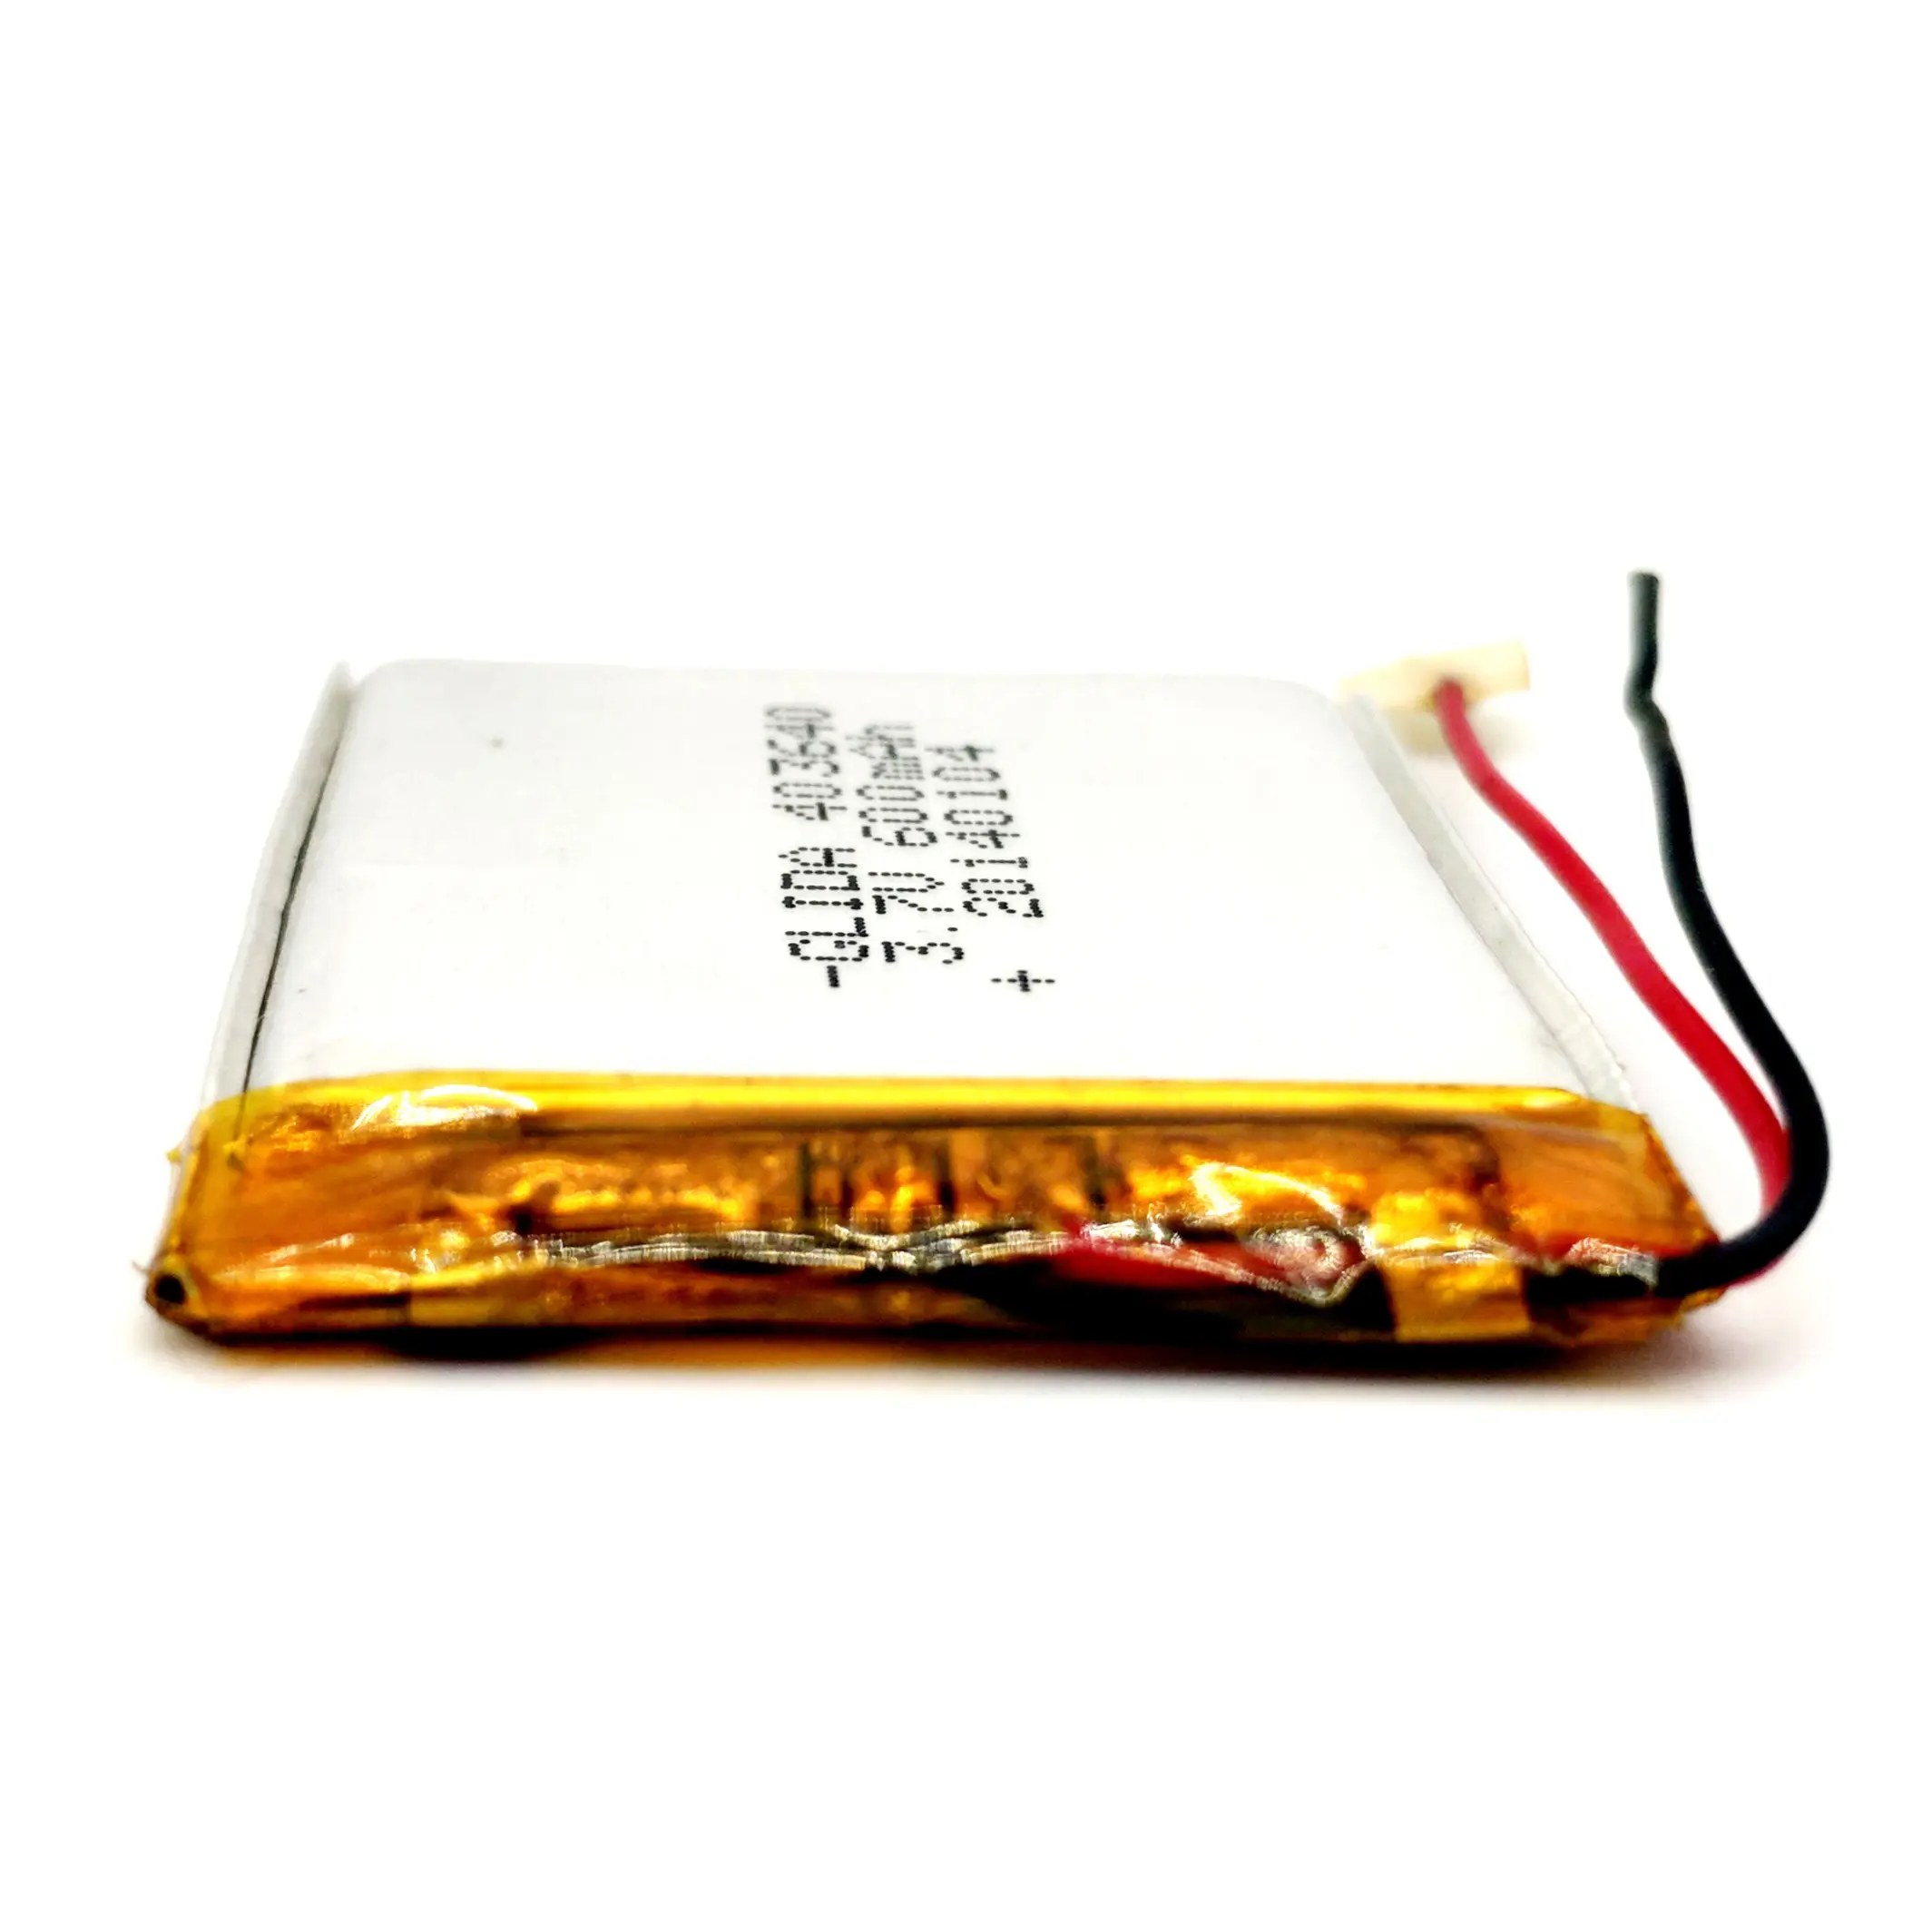 Batteria al litio polimerica ricaricabile 603040 3.7V 600mAh batterie li-po prismatico IEC62133 UL2054 rohs ce un38.8 MSDS personalizzato